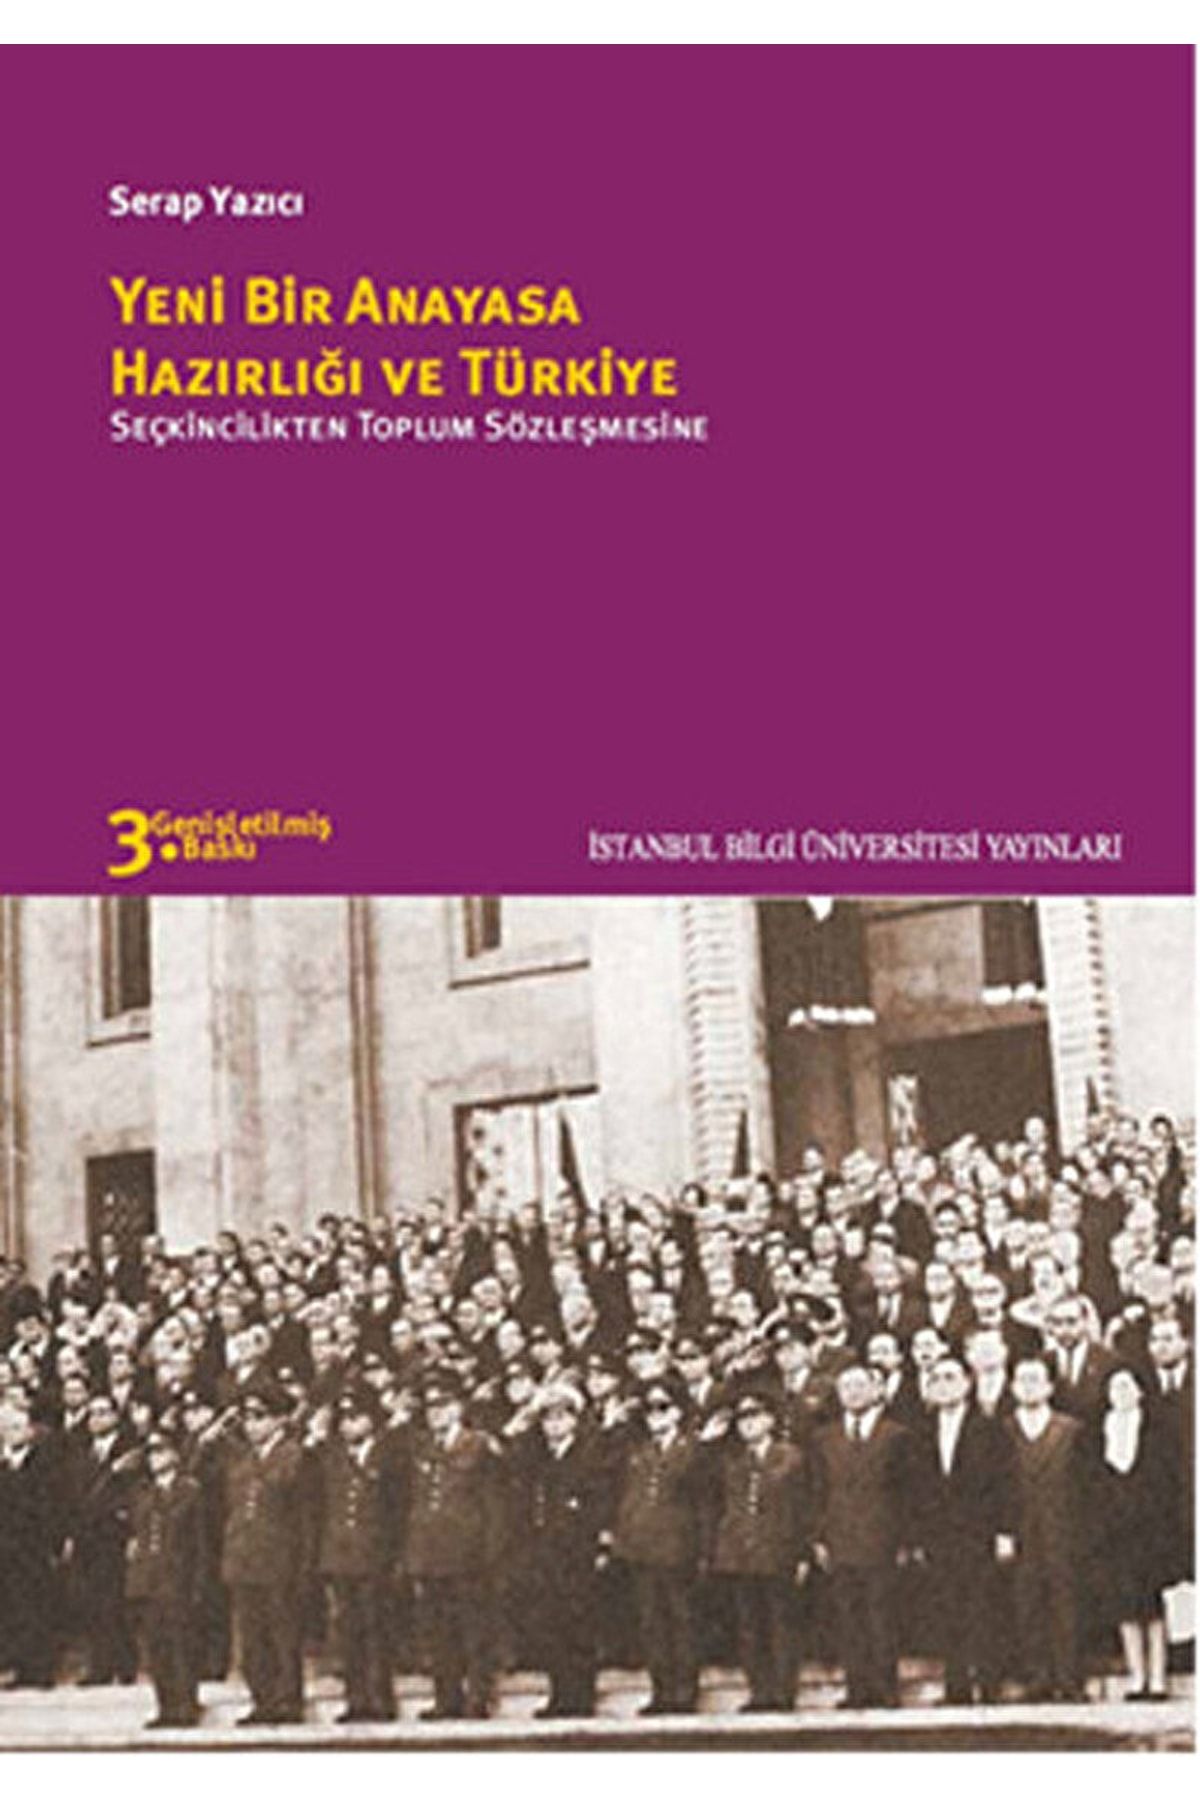 İstanbul Bilgi Üniversitesi Yayınları Yeni Bir Anayasa Hazırlığı Ve Türkiye / / 9786053990970